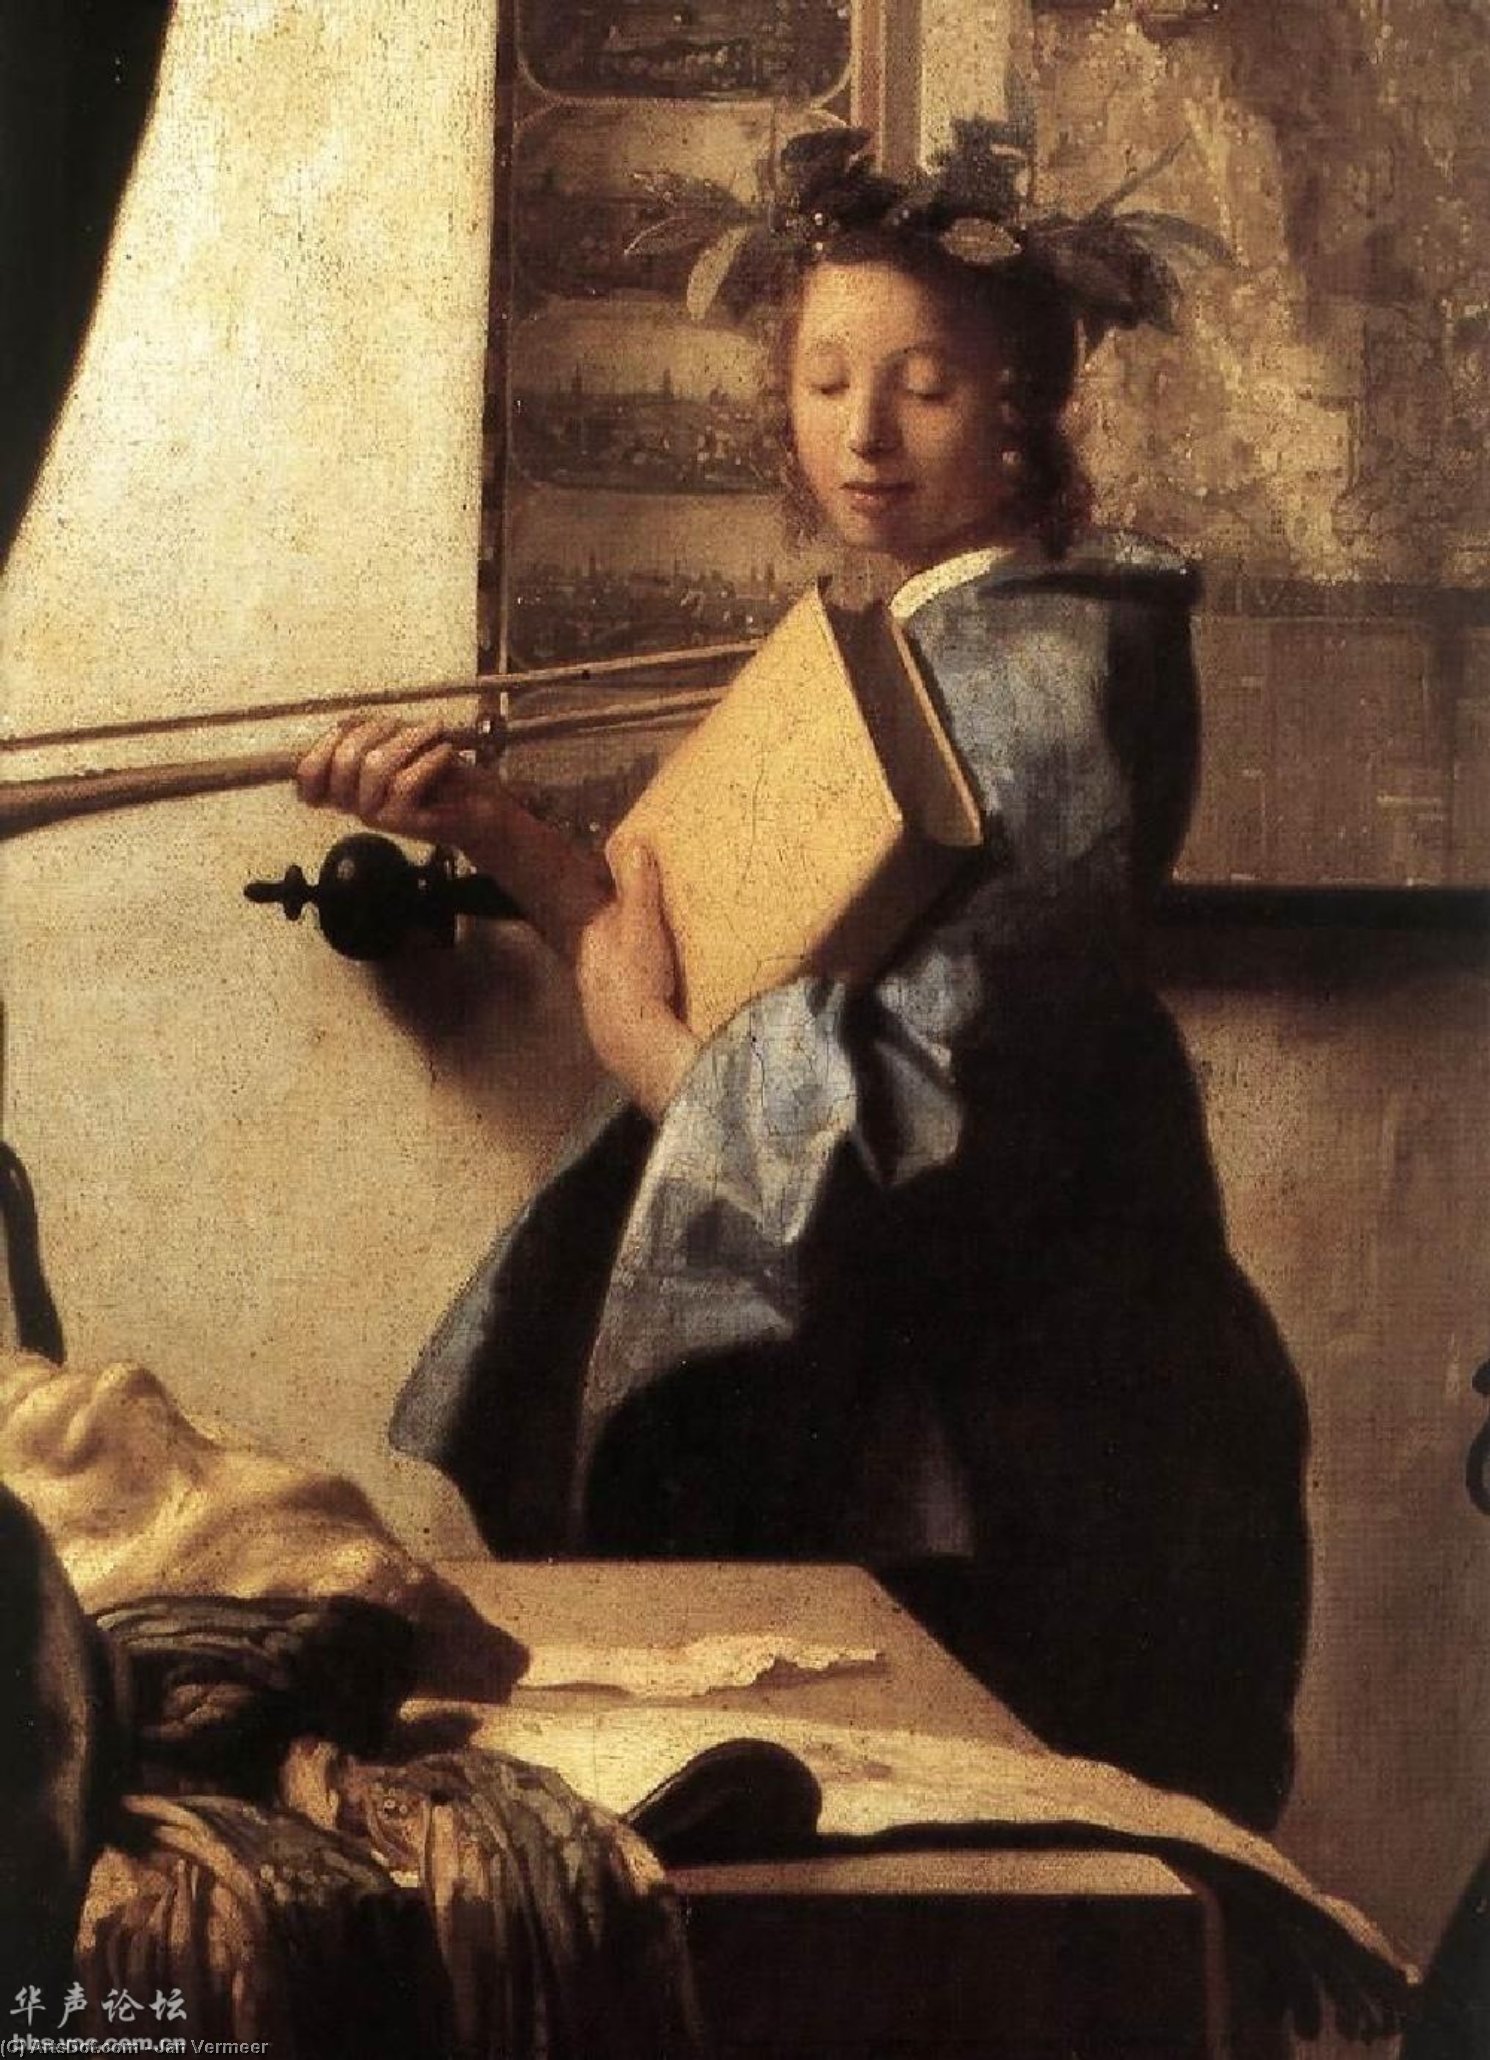 WikiOO.org - Encyclopedia of Fine Arts - Lukisan, Artwork Jan Vermeer - The Art of Painting (detail)